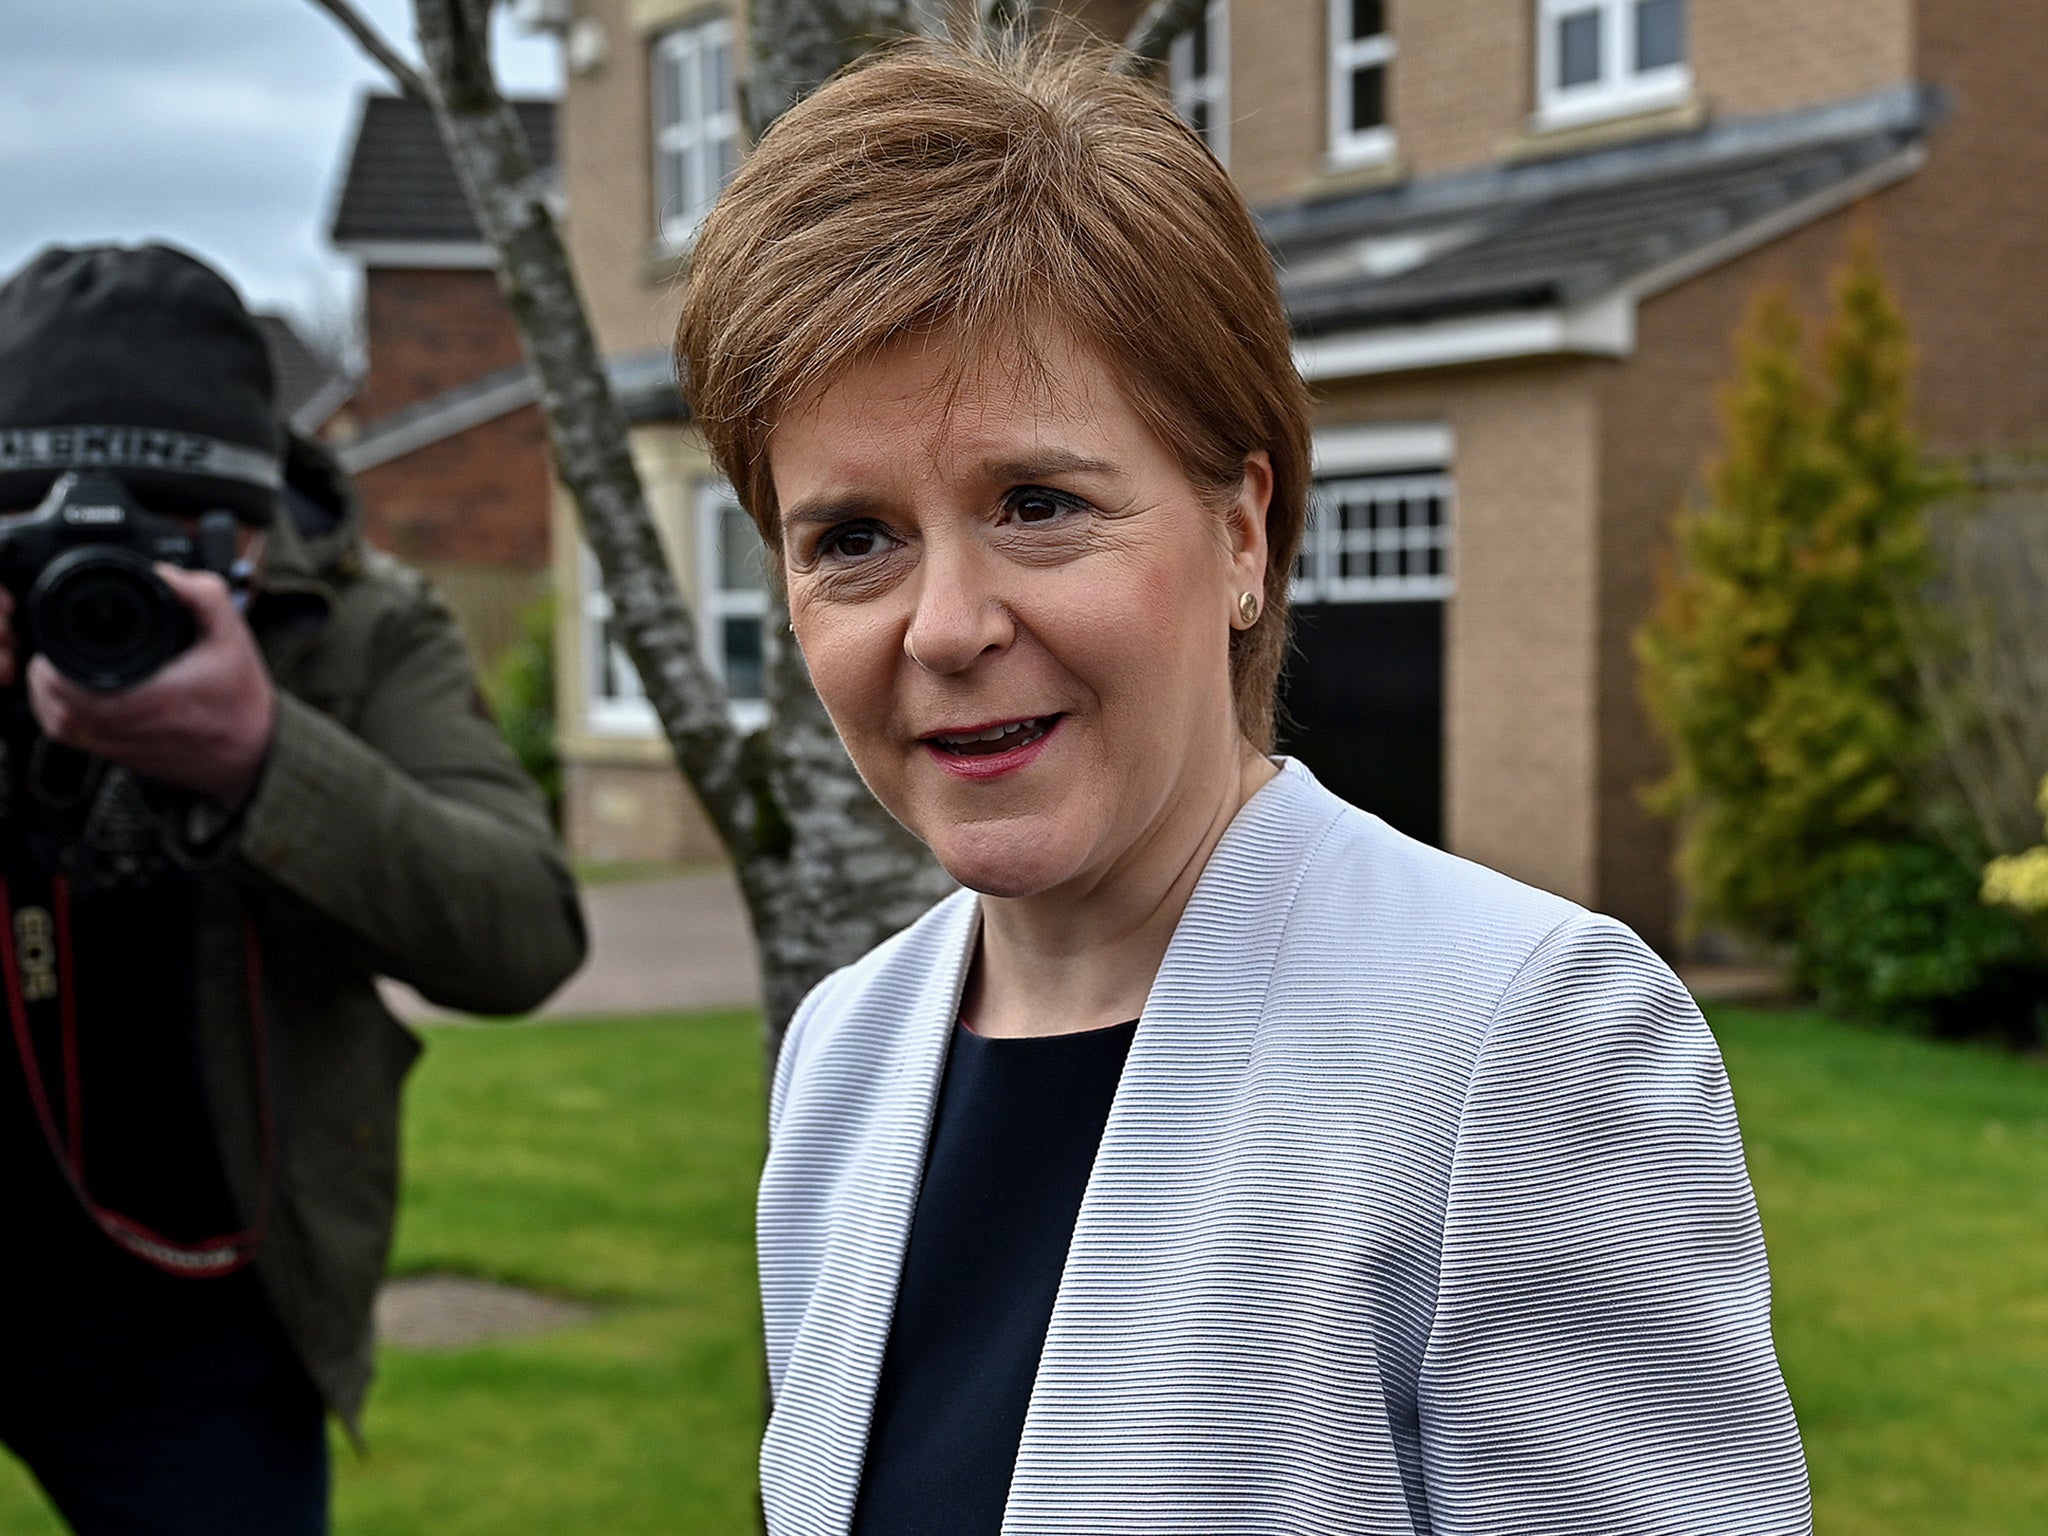 Nicola Sturgeon launched a referendum-seeking bill on Monday